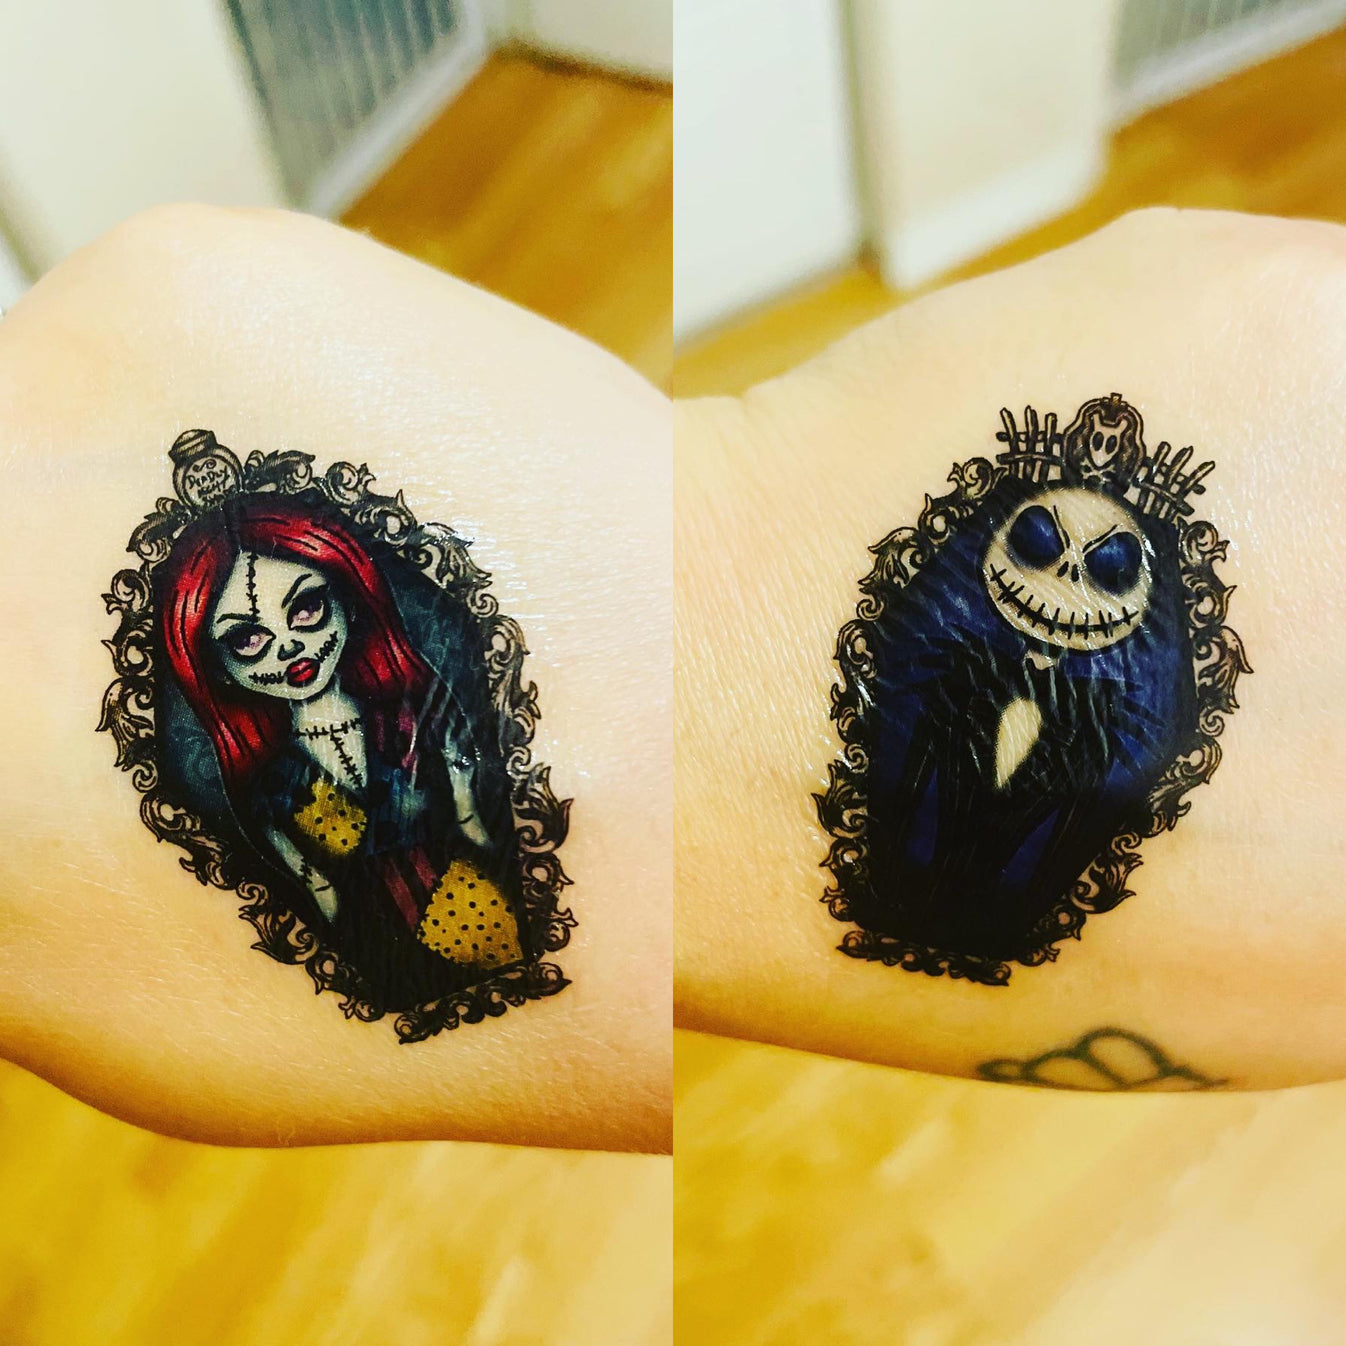 Nightmare Duo Temporary Tattoos